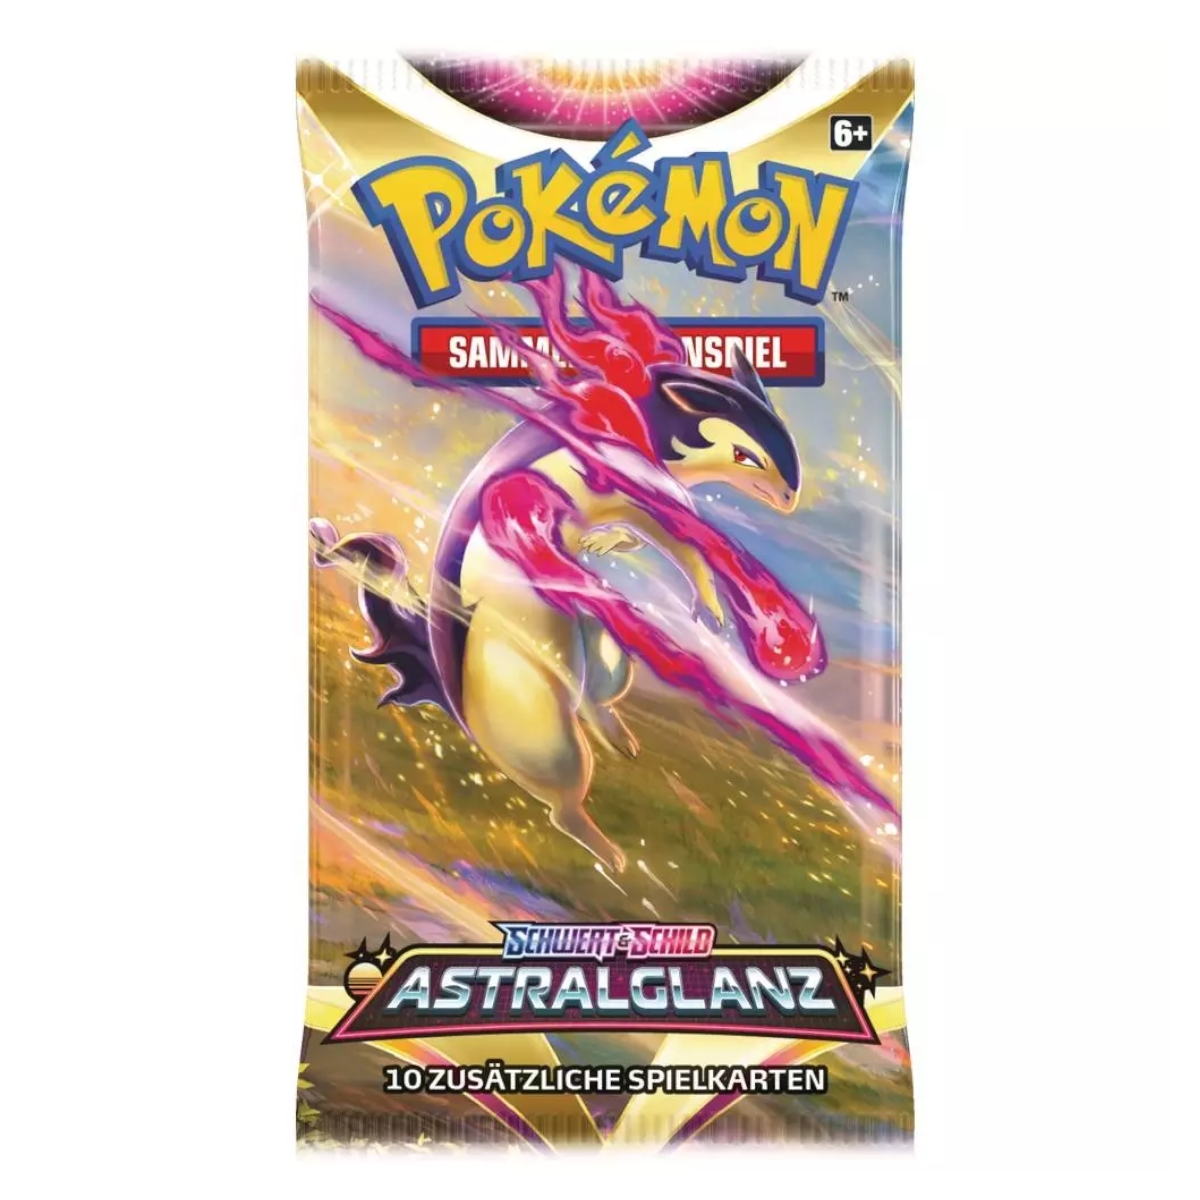 Pokémon - Astralglanz Booster